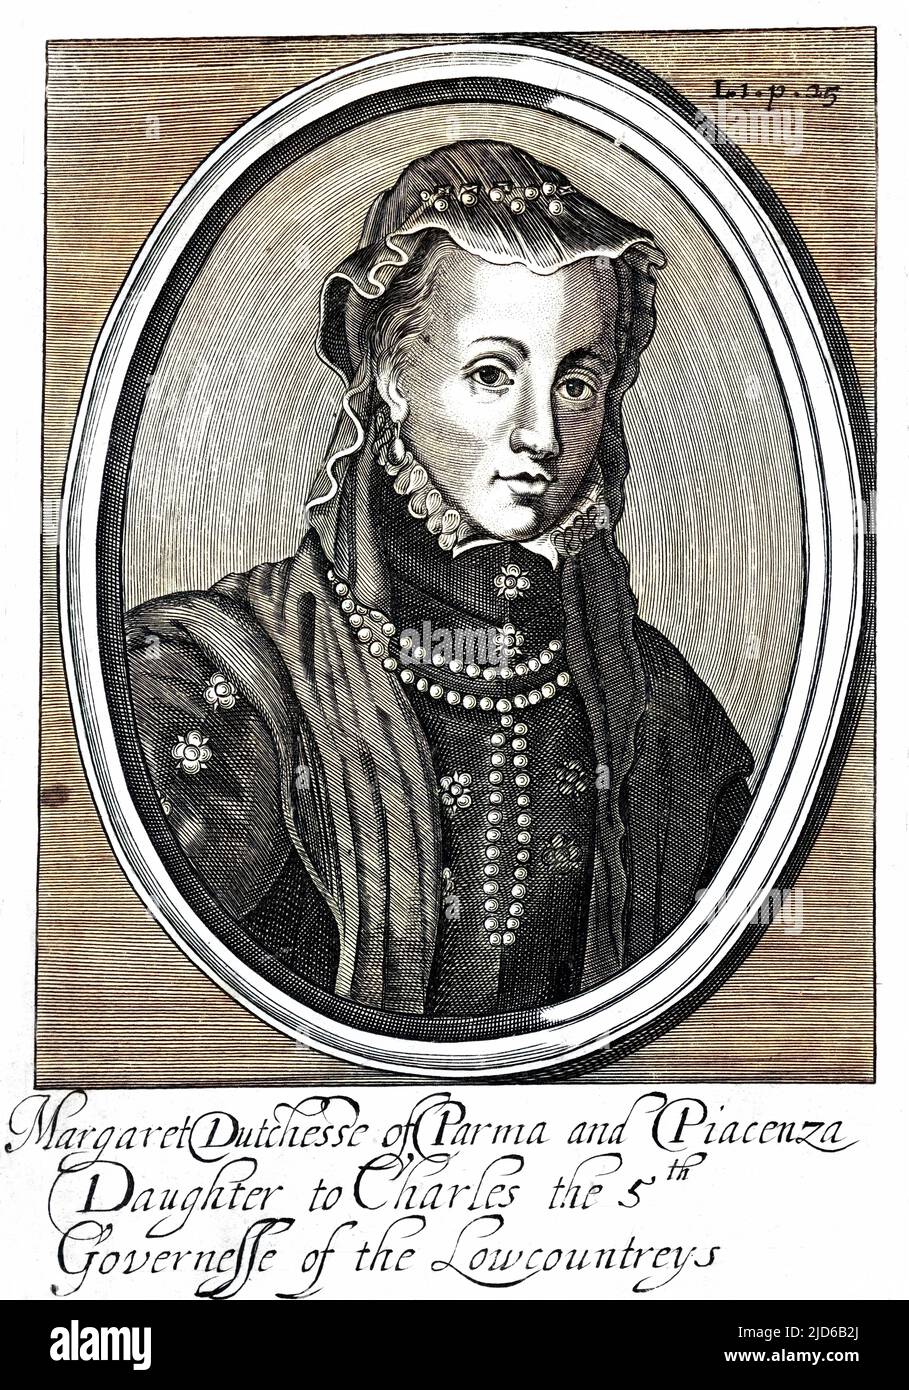 MARGARET D'AUSTRIA conosciuta anche come Margaret di Parma (duchessa di Parma e Piacenza) figlia dell'imperatore Carlo V e Reggente dei Paesi Bassi 1559 - 1567 versione colorizzata di : 10164462 Data: 1522 - 1586 Foto Stock